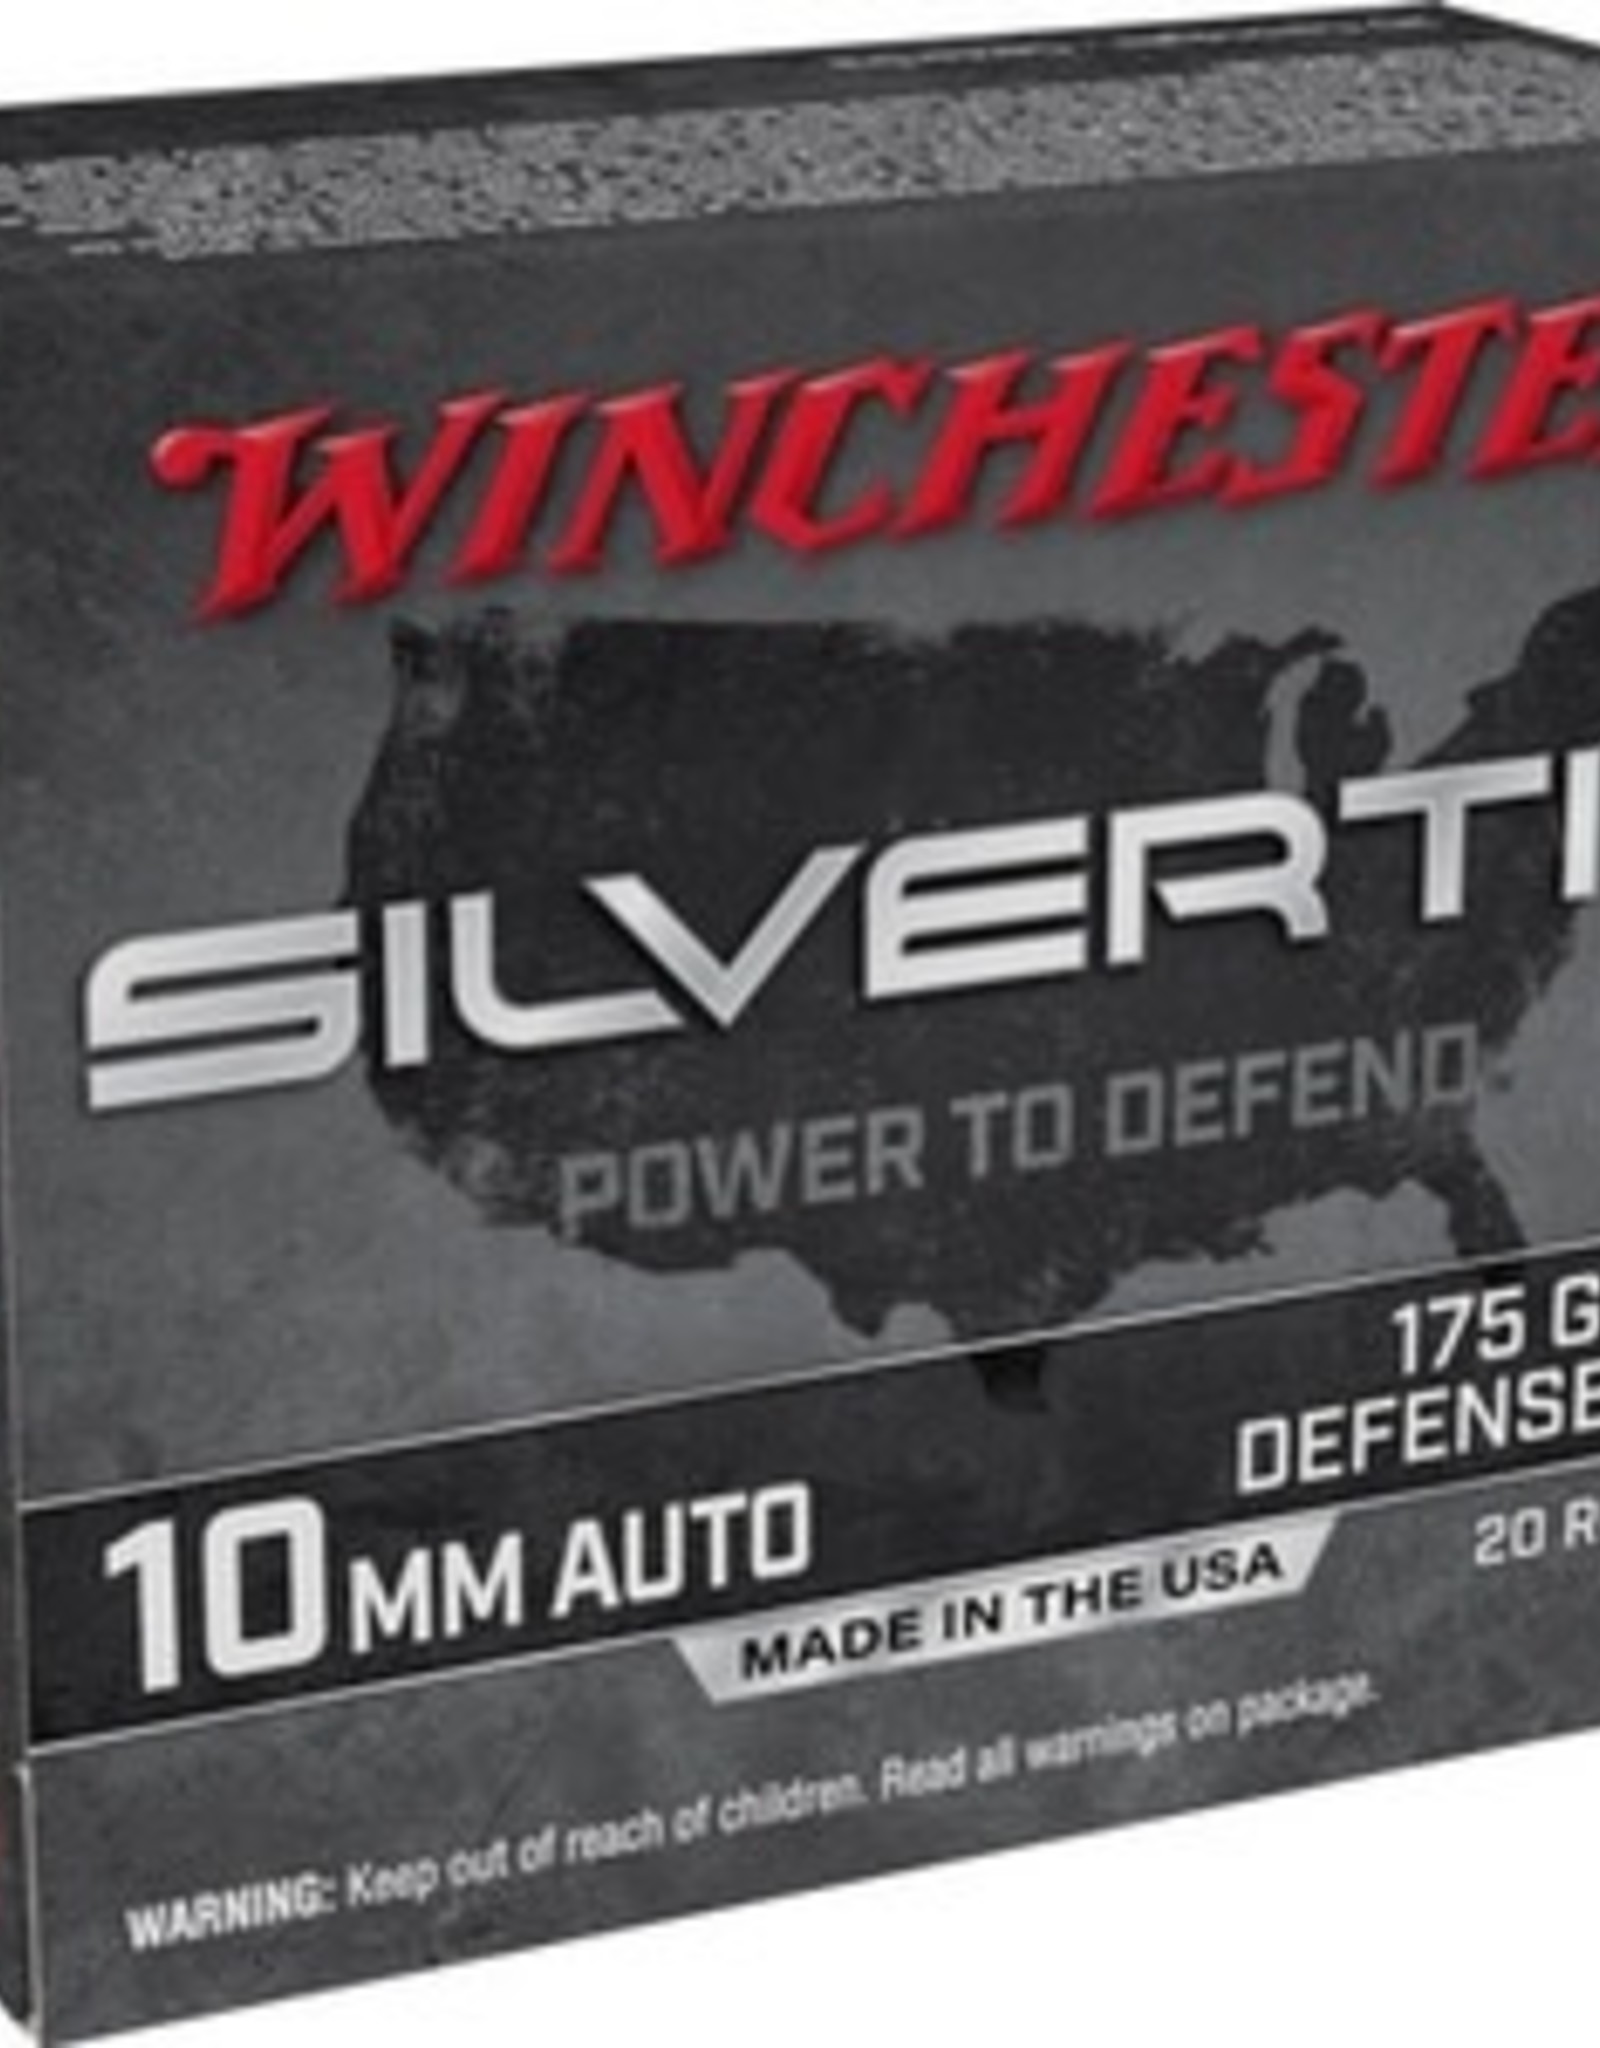 Winchester 10MM Auto Silvertip Pistol 175 GR Defense JHP